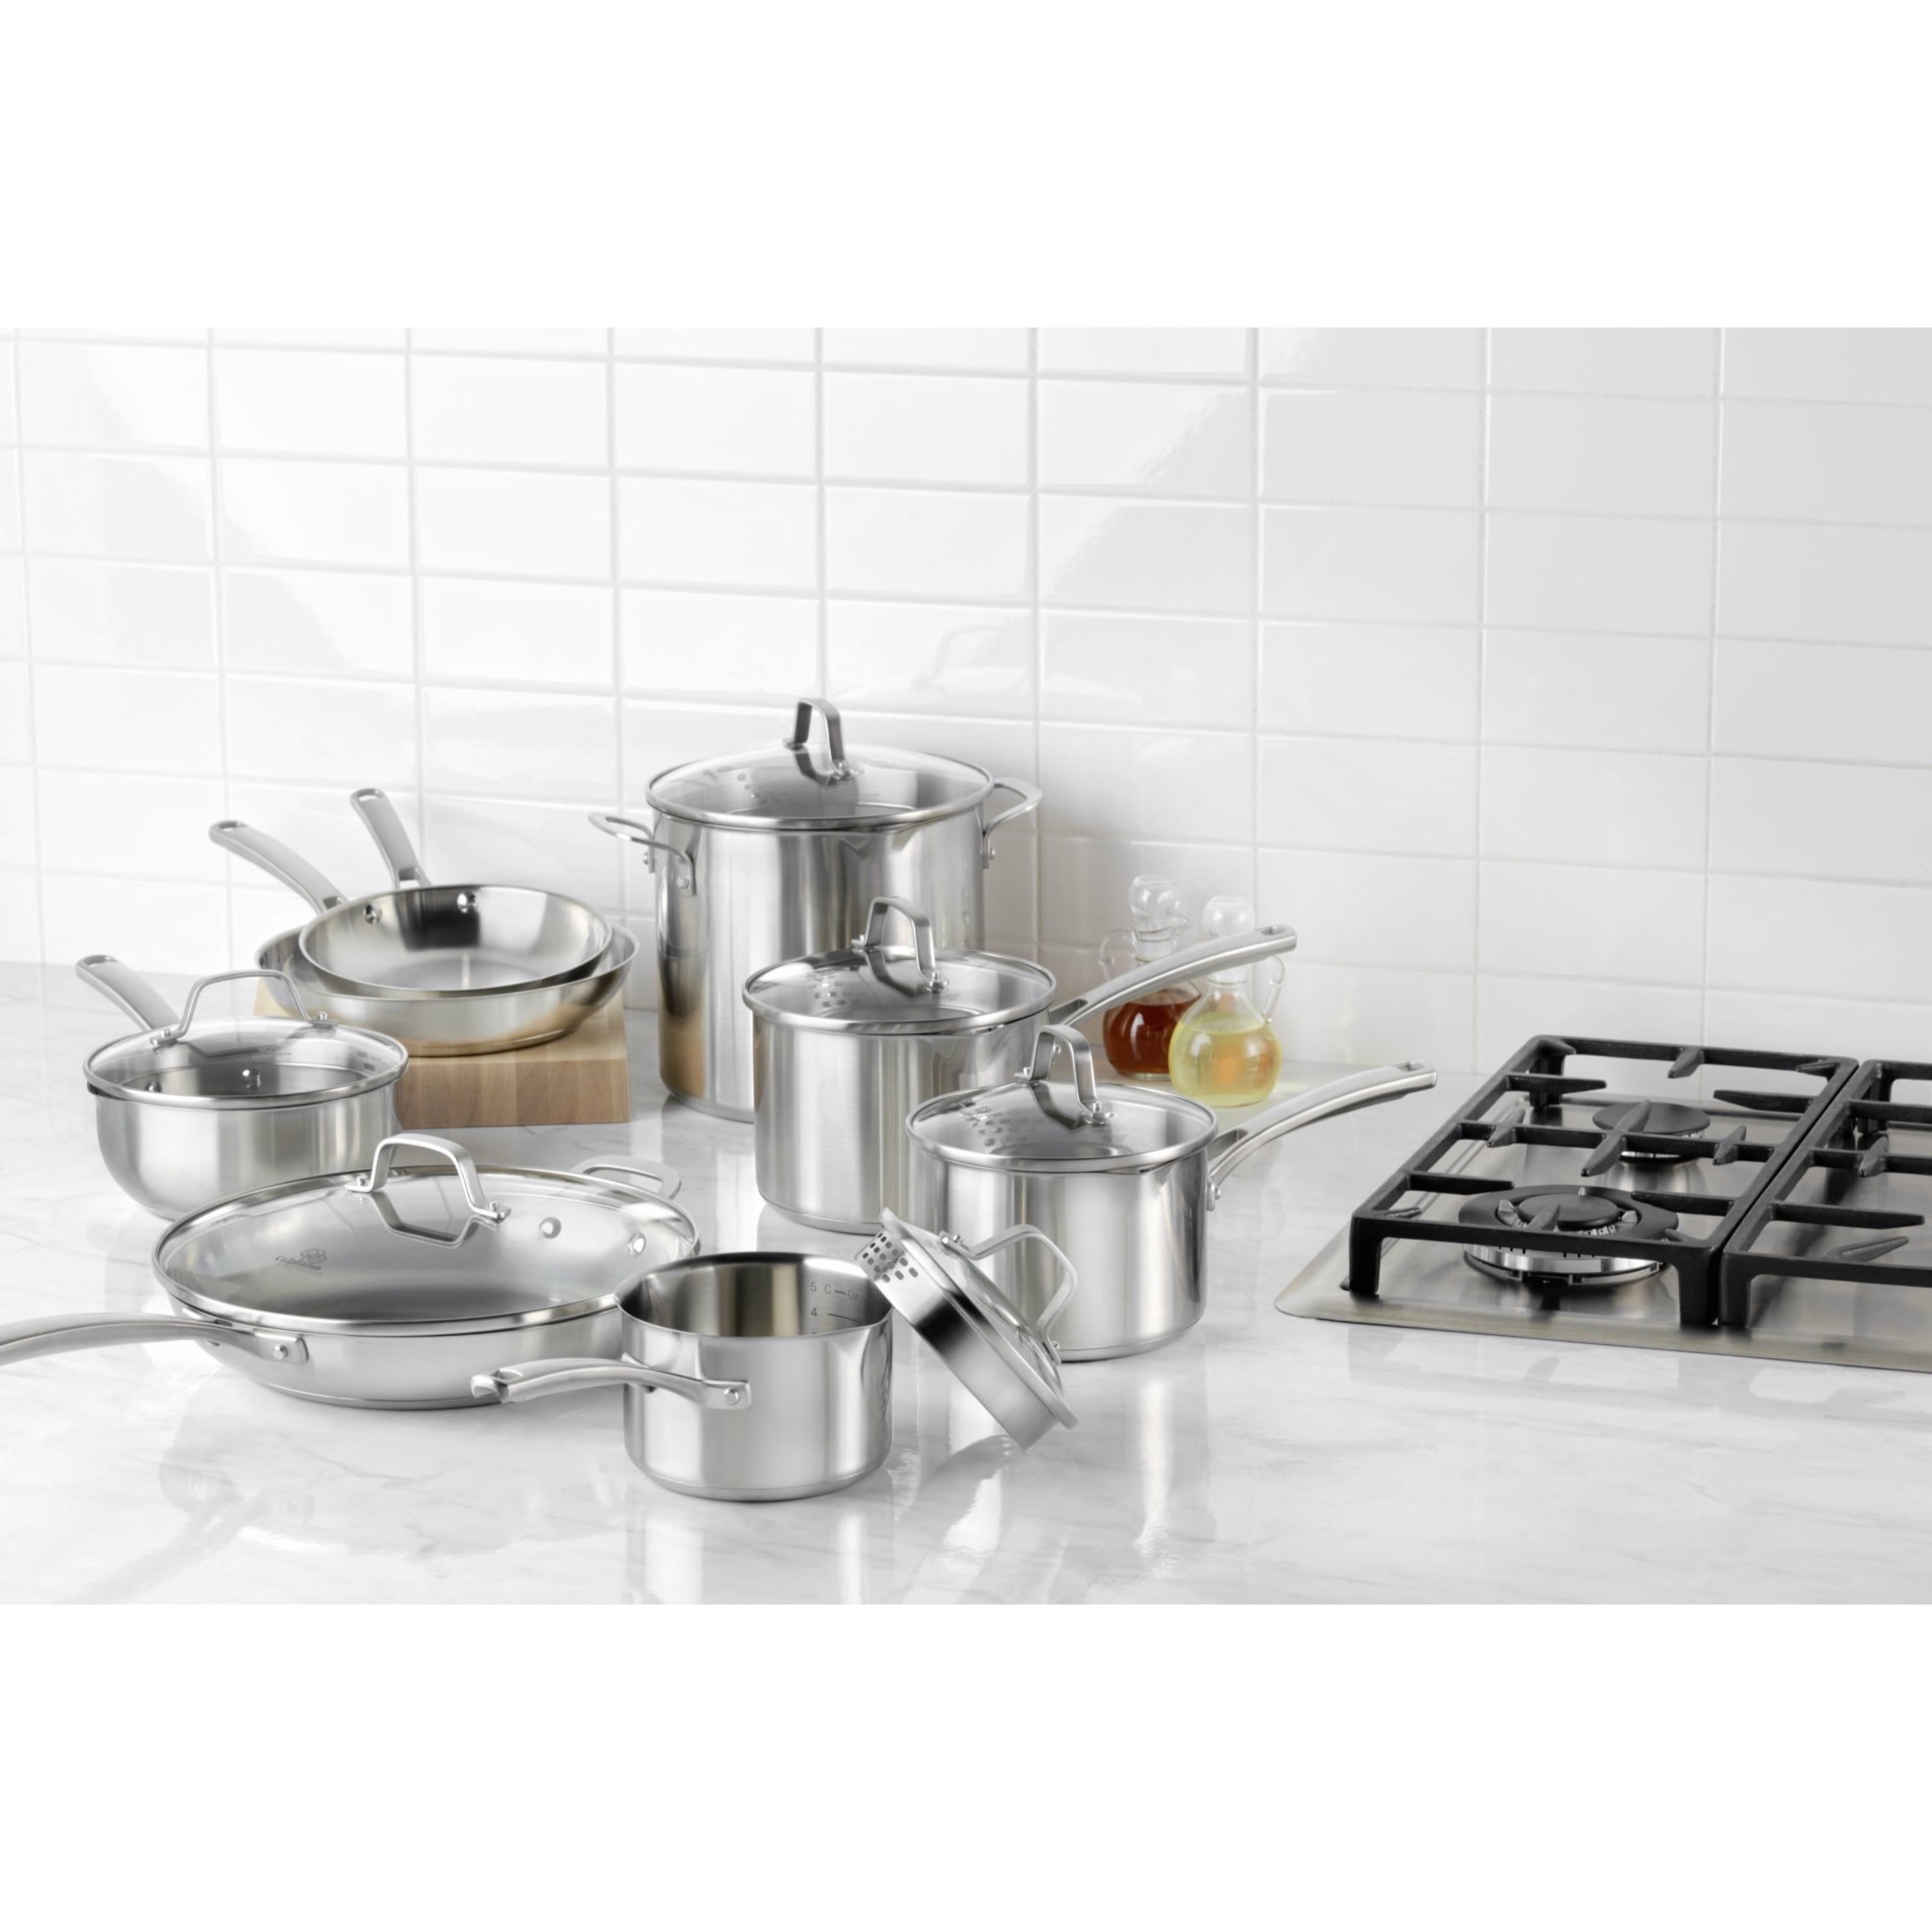 Calphalon 14 piece cookware set - Cookware Sets - Valatie, New York, Facebook Marketplace